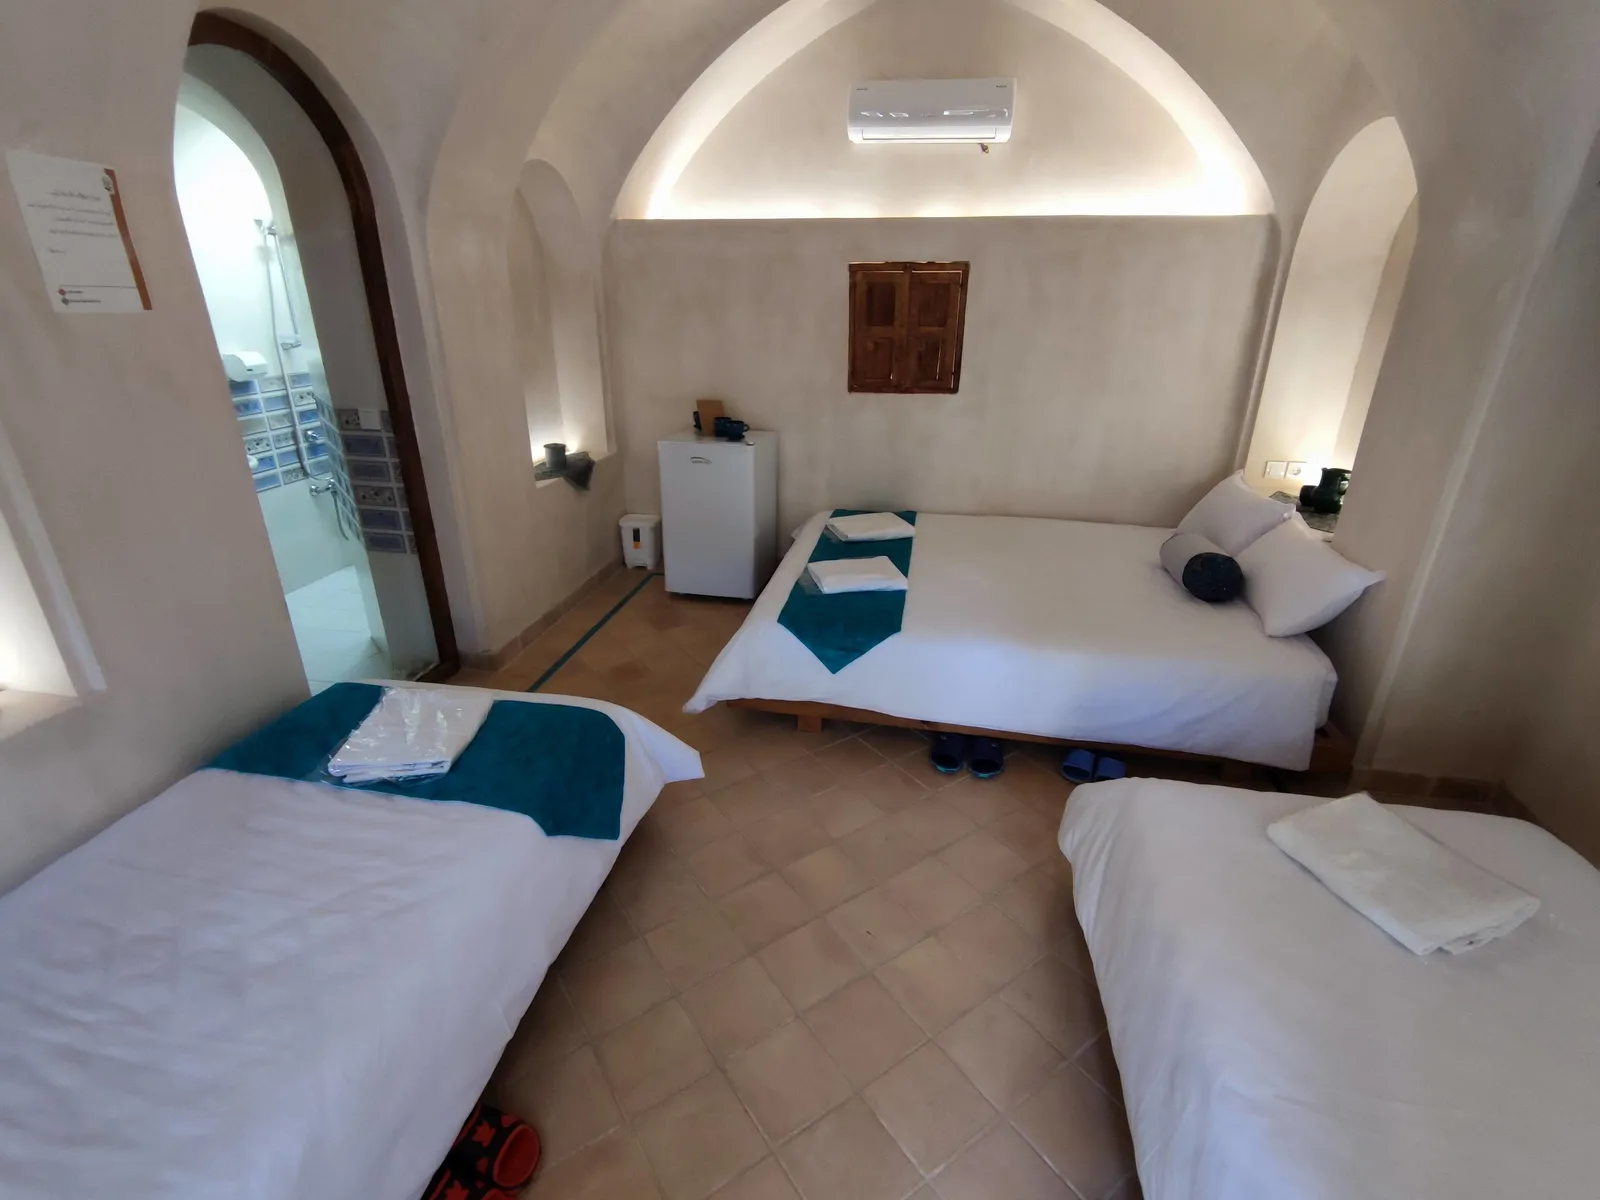 هتل سنتی سرای طاقچشمه (اتاق همدم)،آران و بیدگل - اجاره هتل سنتی در آران و بیدگل - اتاقک